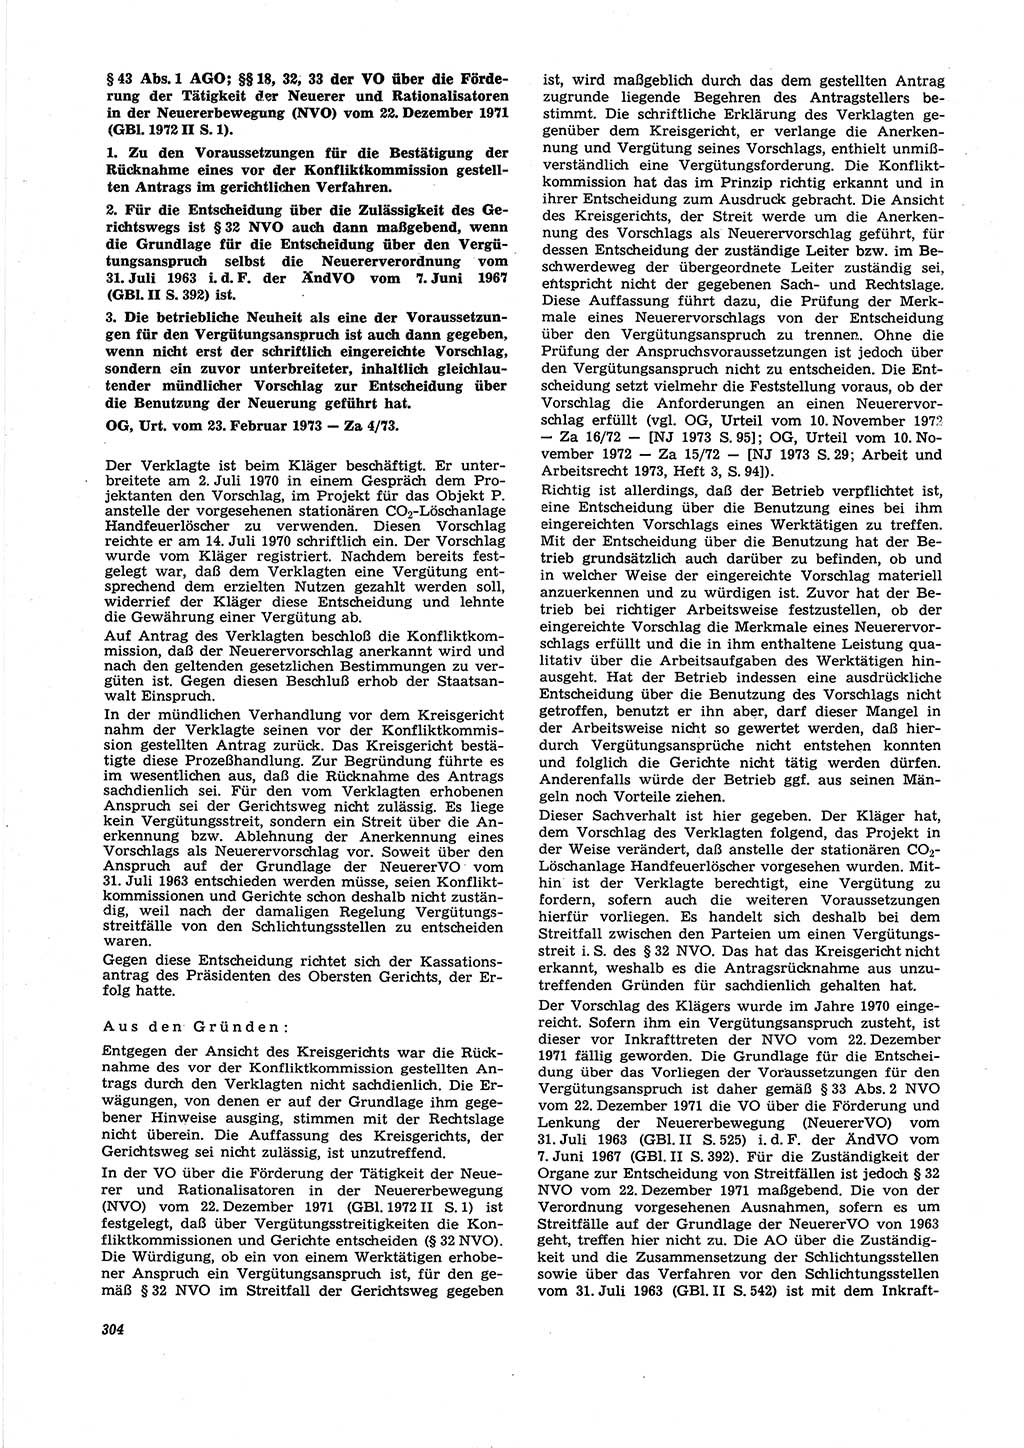 Neue Justiz (NJ), Zeitschrift für Recht und Rechtswissenschaft [Deutsche Demokratische Republik (DDR)], 27. Jahrgang 1973, Seite 304 (NJ DDR 1973, S. 304)